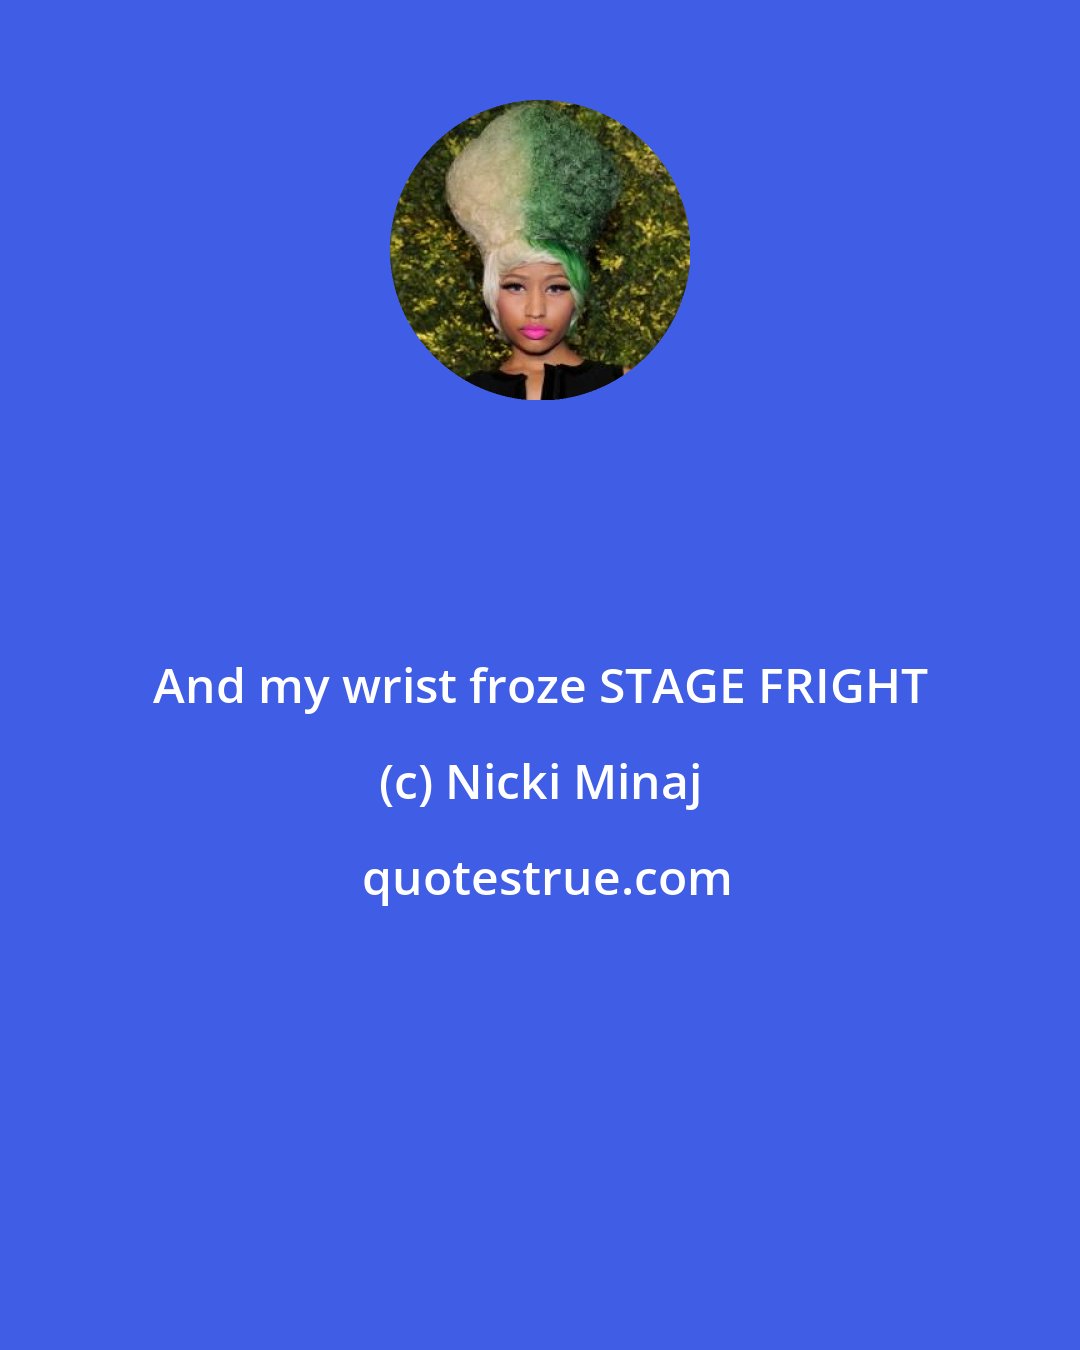 Nicki Minaj: And my wrist froze STAGE FRIGHT